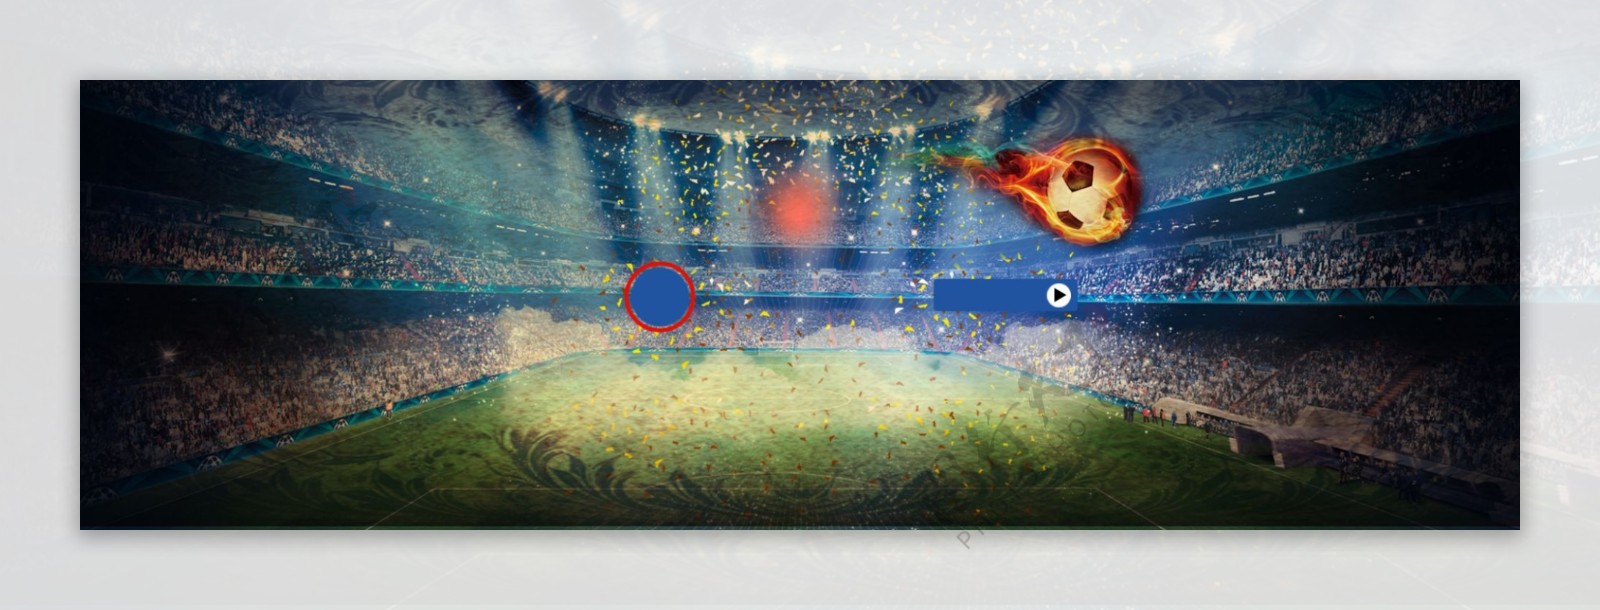 世界杯足球比赛场地banner宣传背景